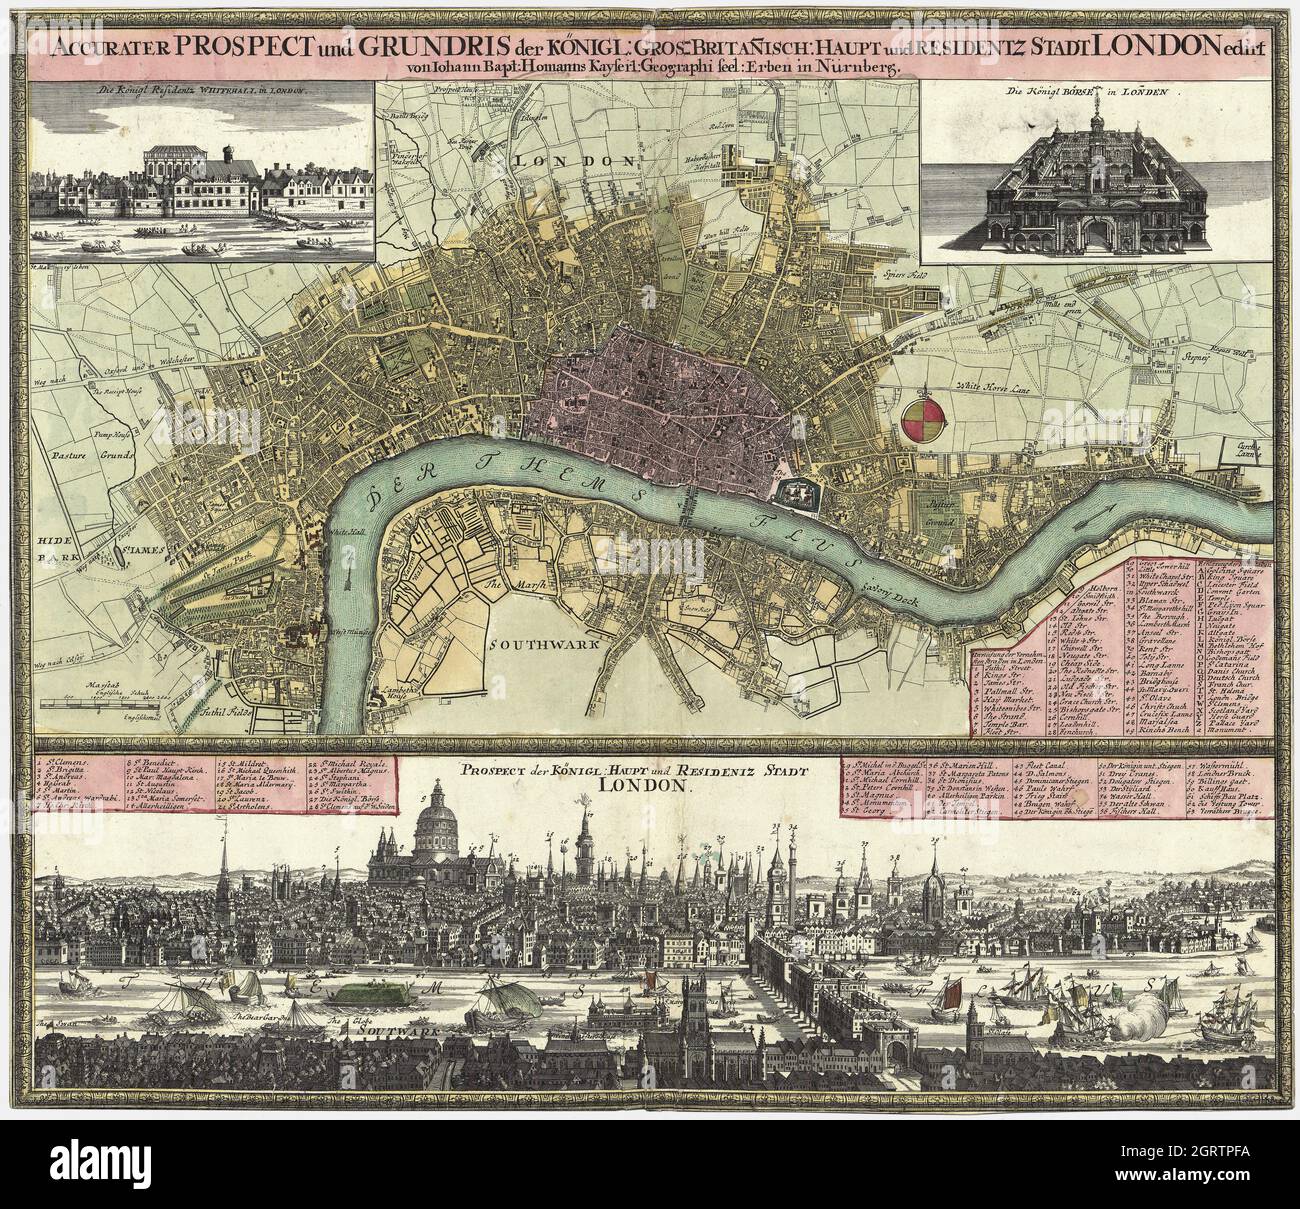 Accurater Prospect und Grundris der Königl. Gros-Britan̄isch. Haupt- und Residentz-Stadt London – German map of London. Nürnberg, 1740. Stock Photo